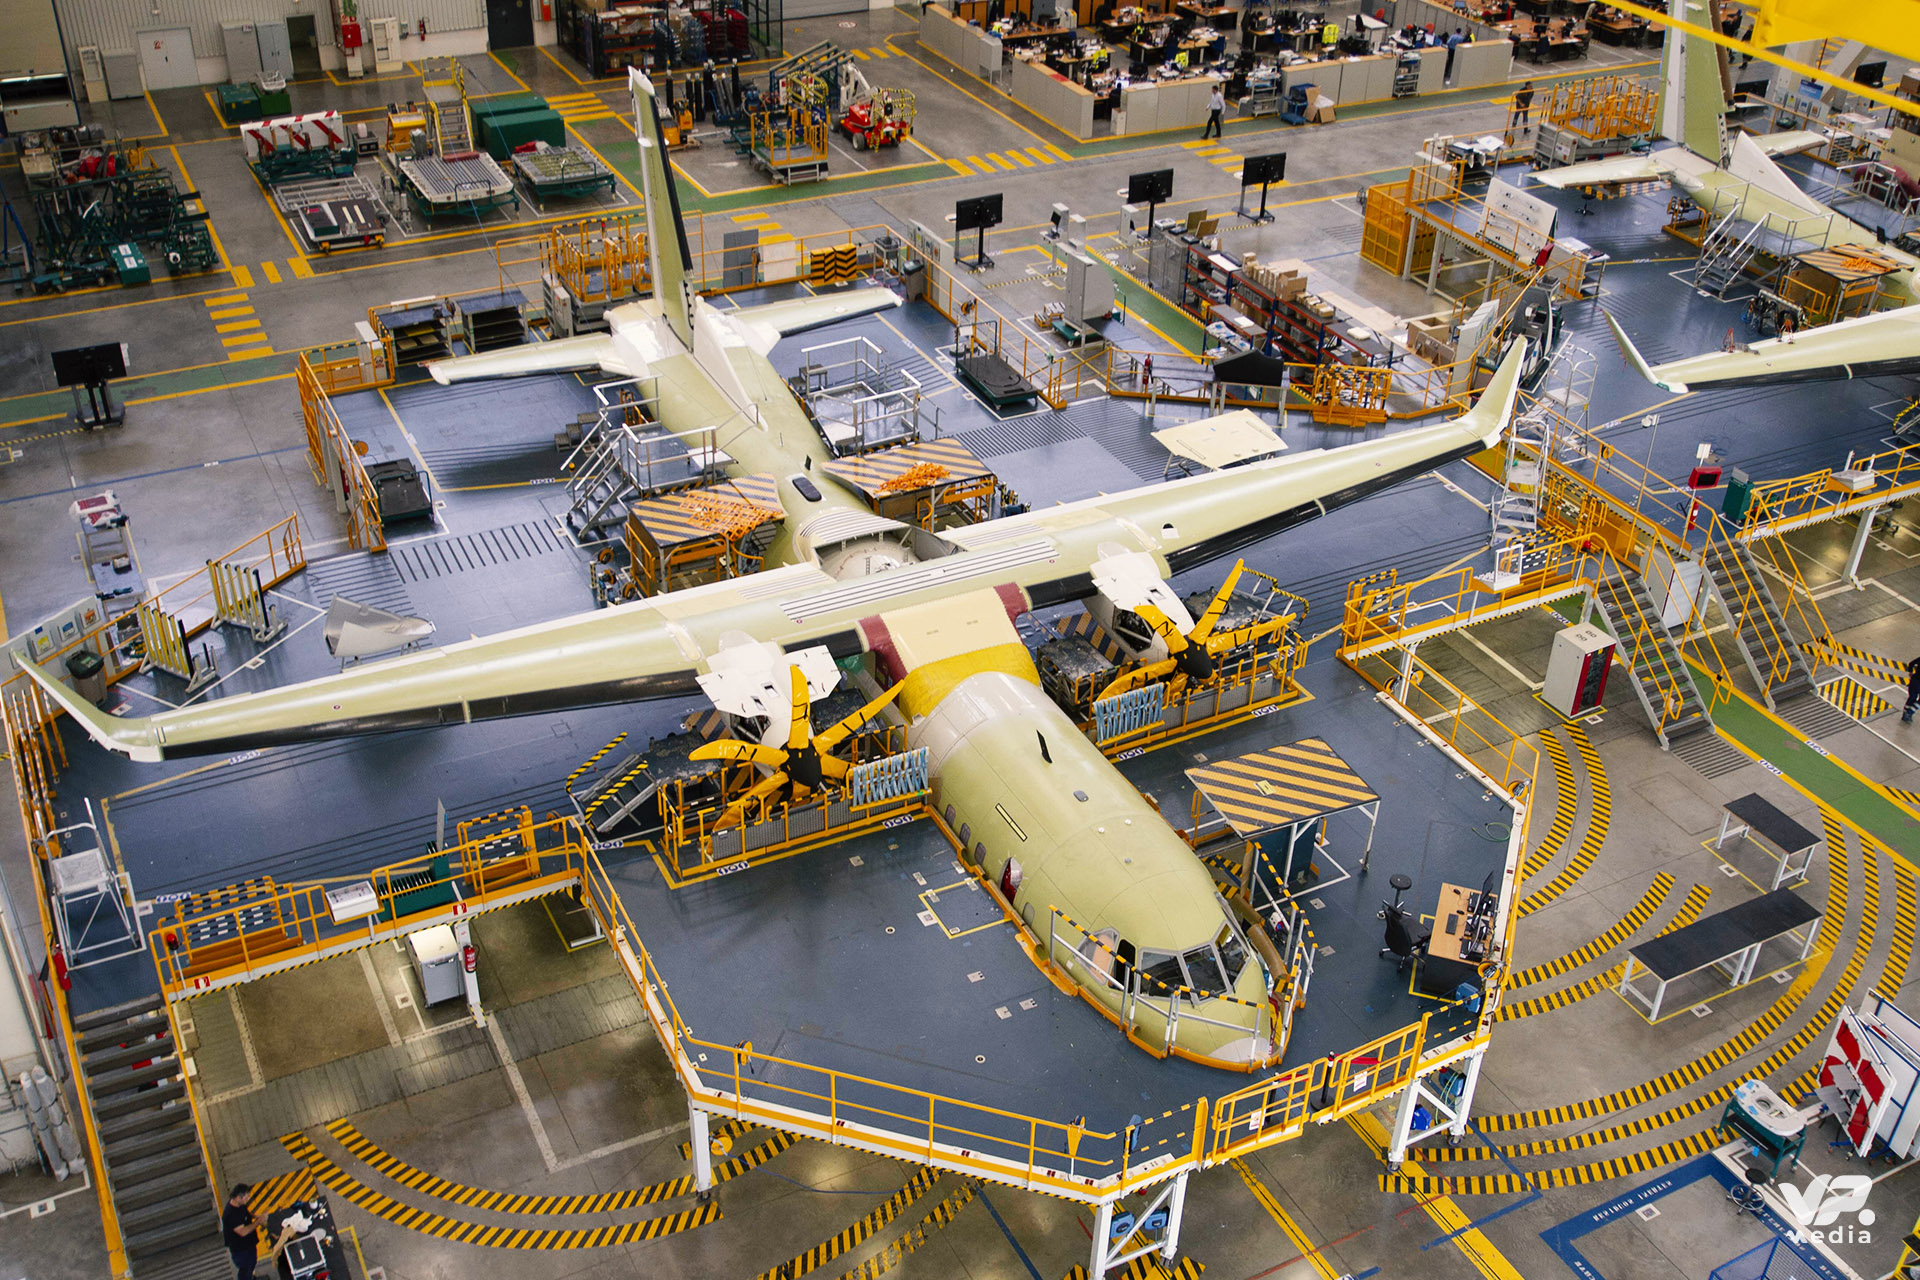 Fabricación Airbus A400m videopro.media